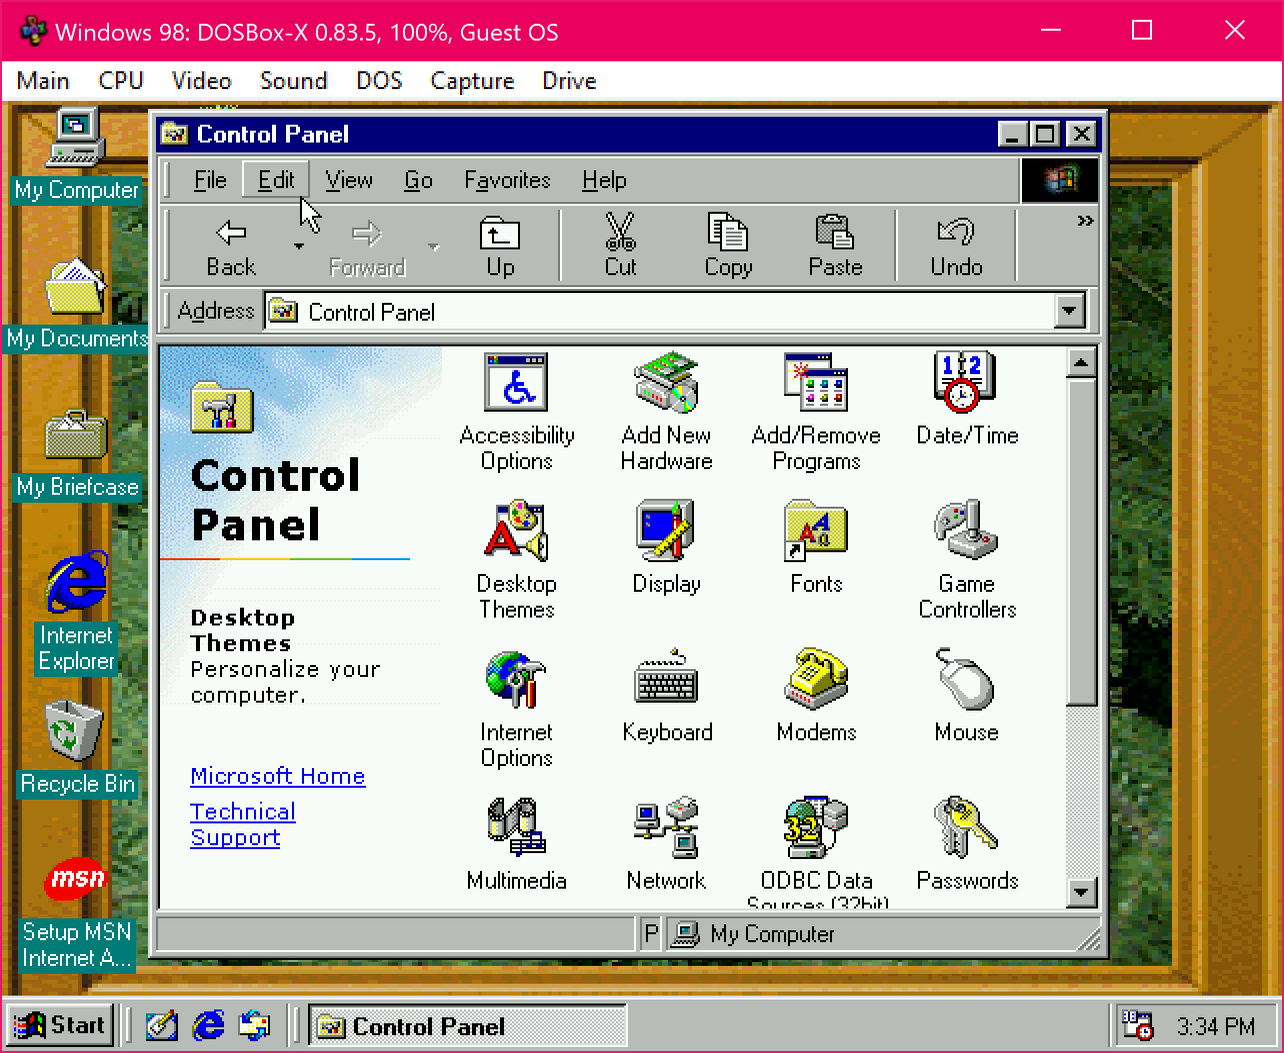 Windows 98 guest running in DOSBox-X